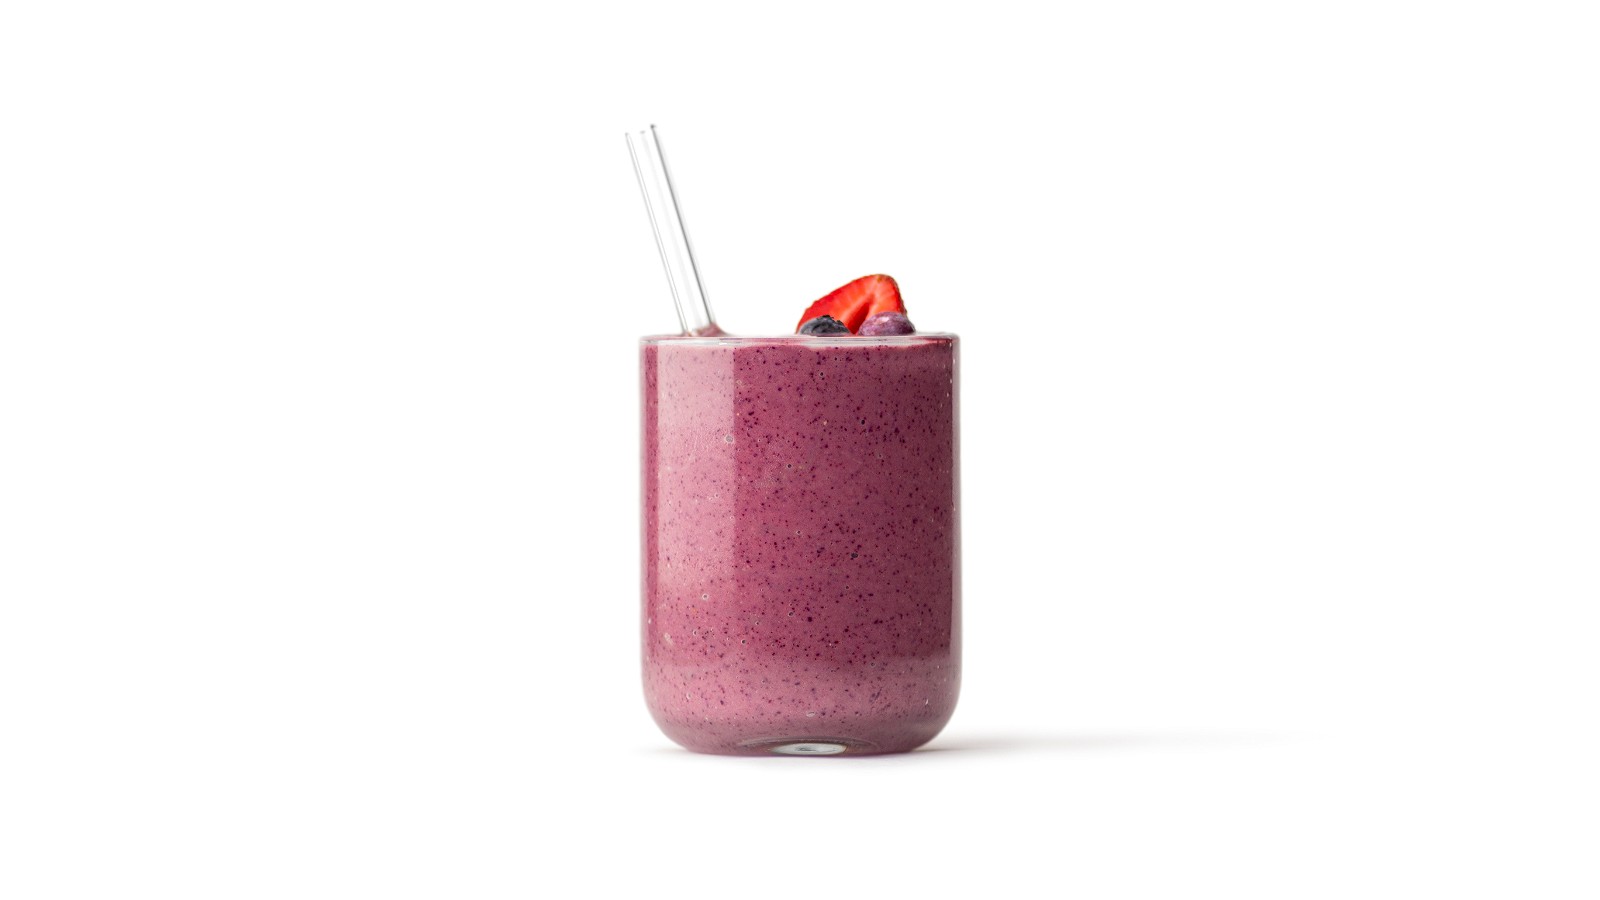 Image of blueberry-hemp smoothie